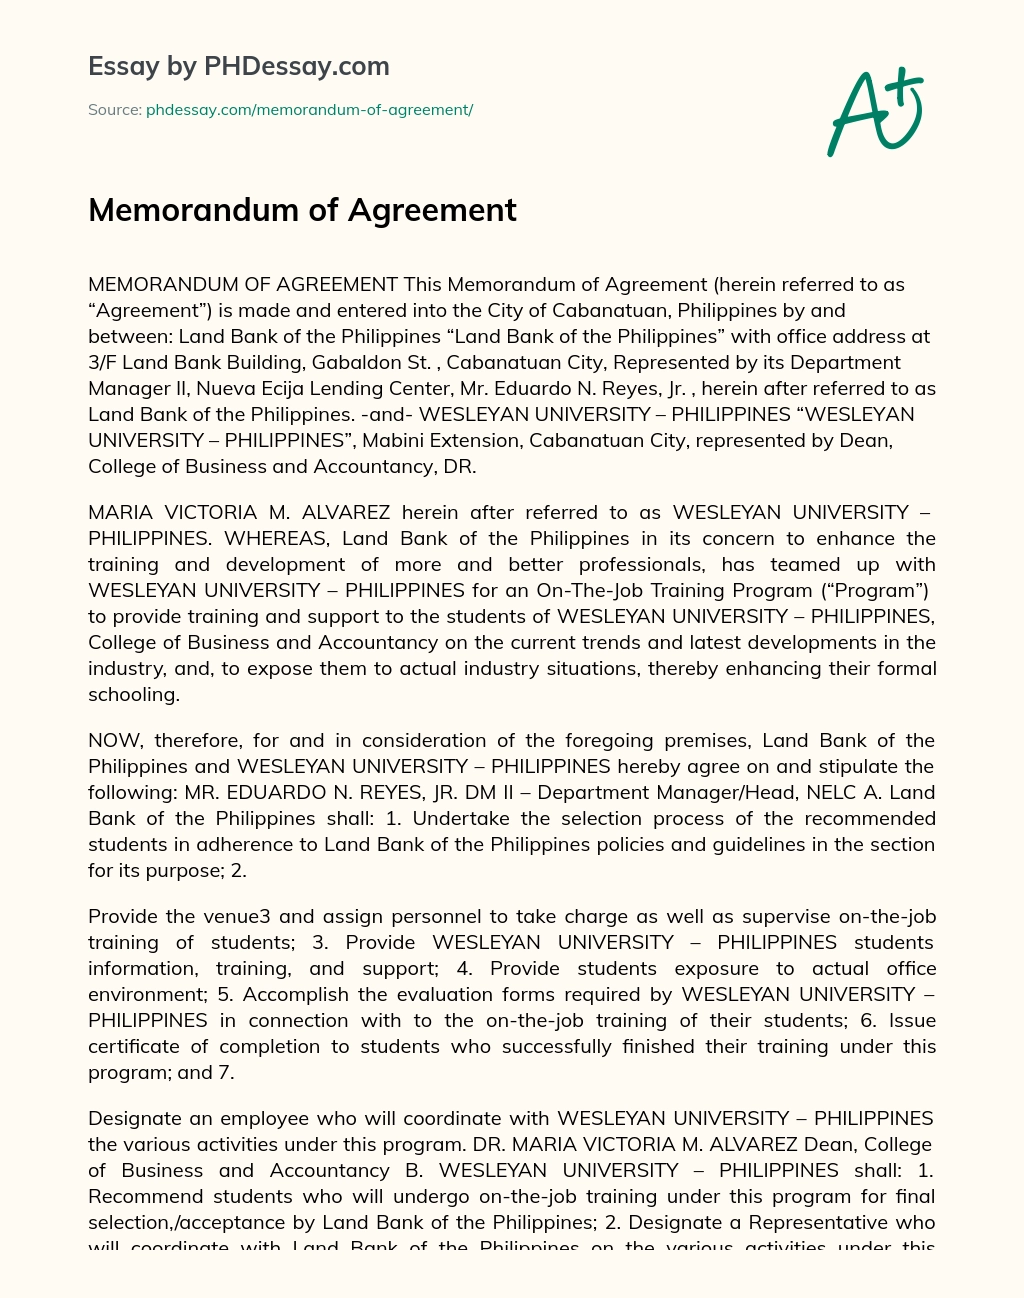 Memorandum of Agreement essay